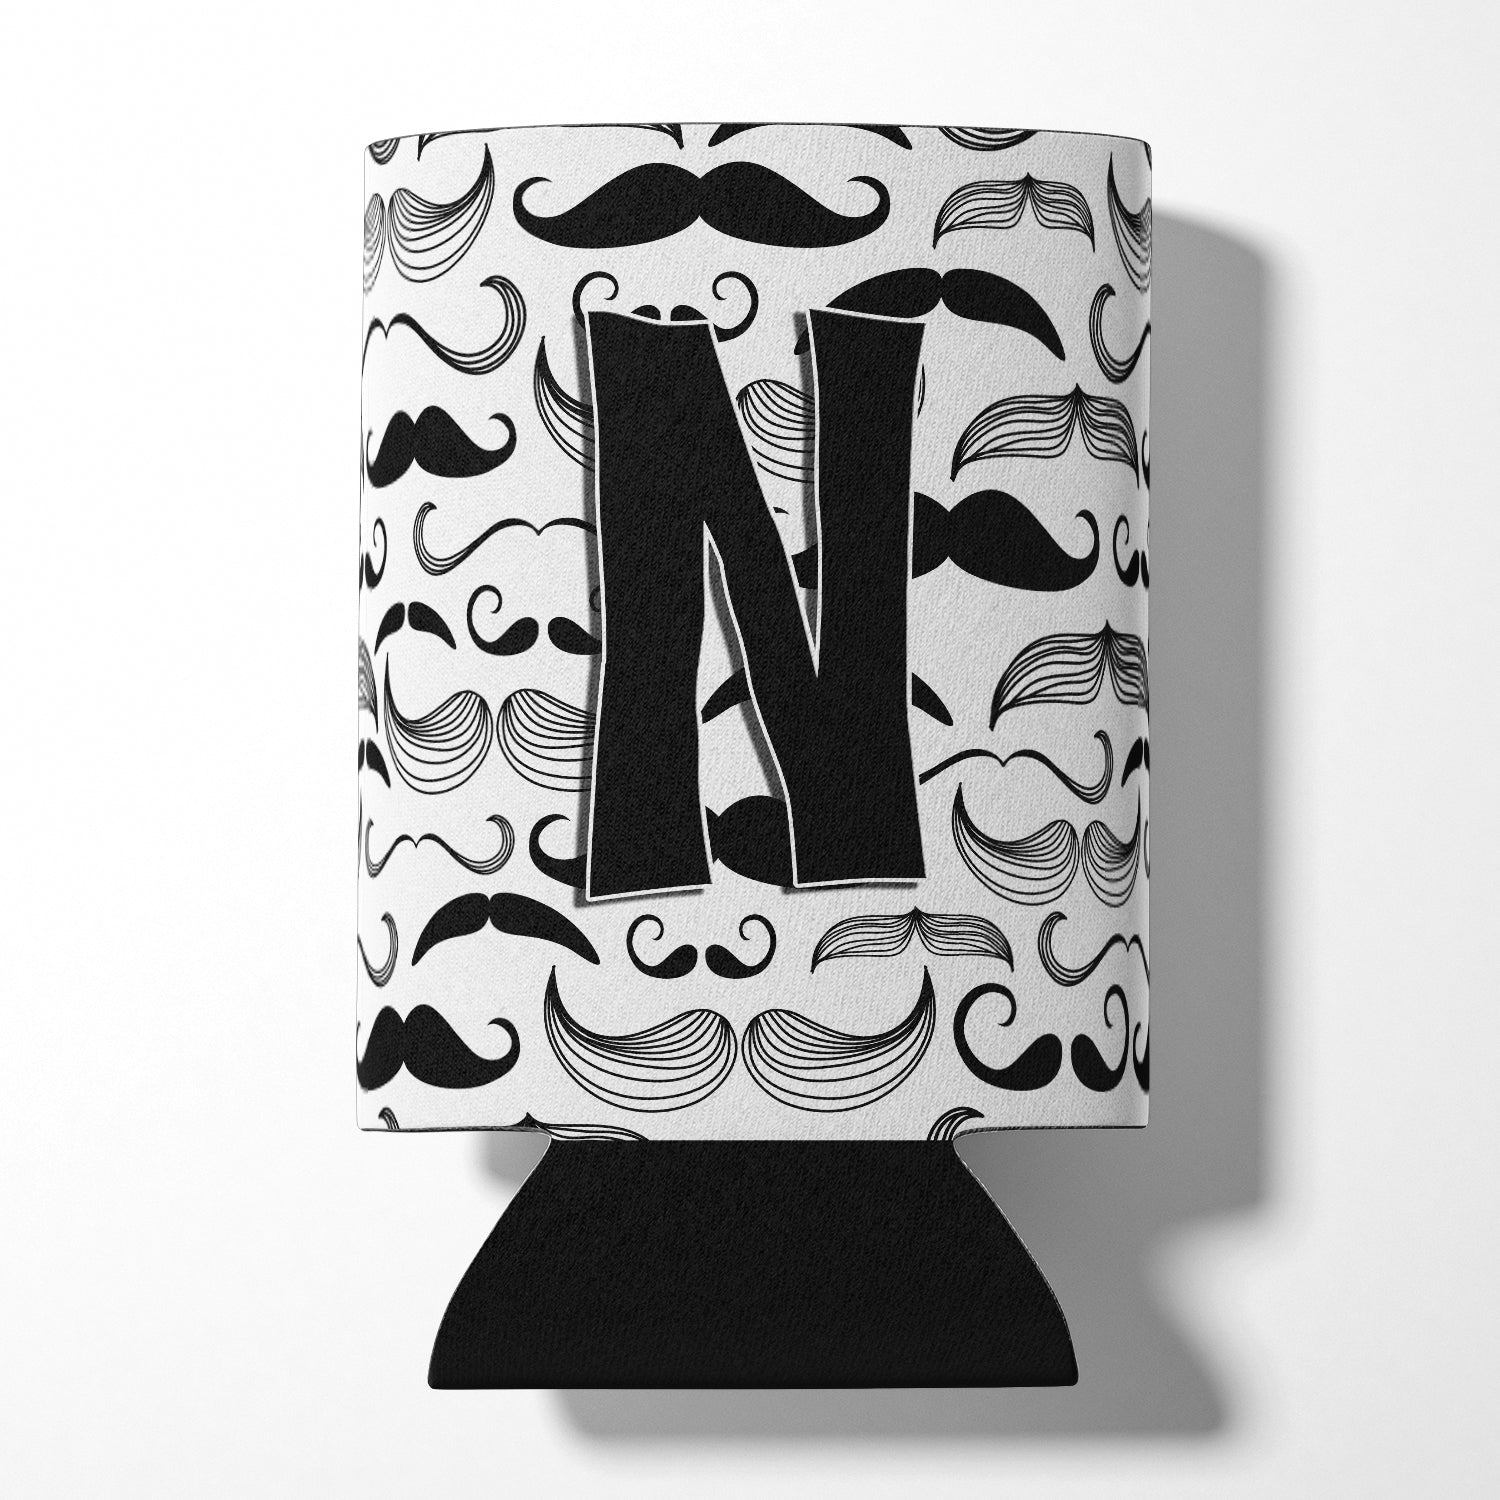 Letter N Moustache Initial Can or Bottle Hugger CJ2009-NCC.